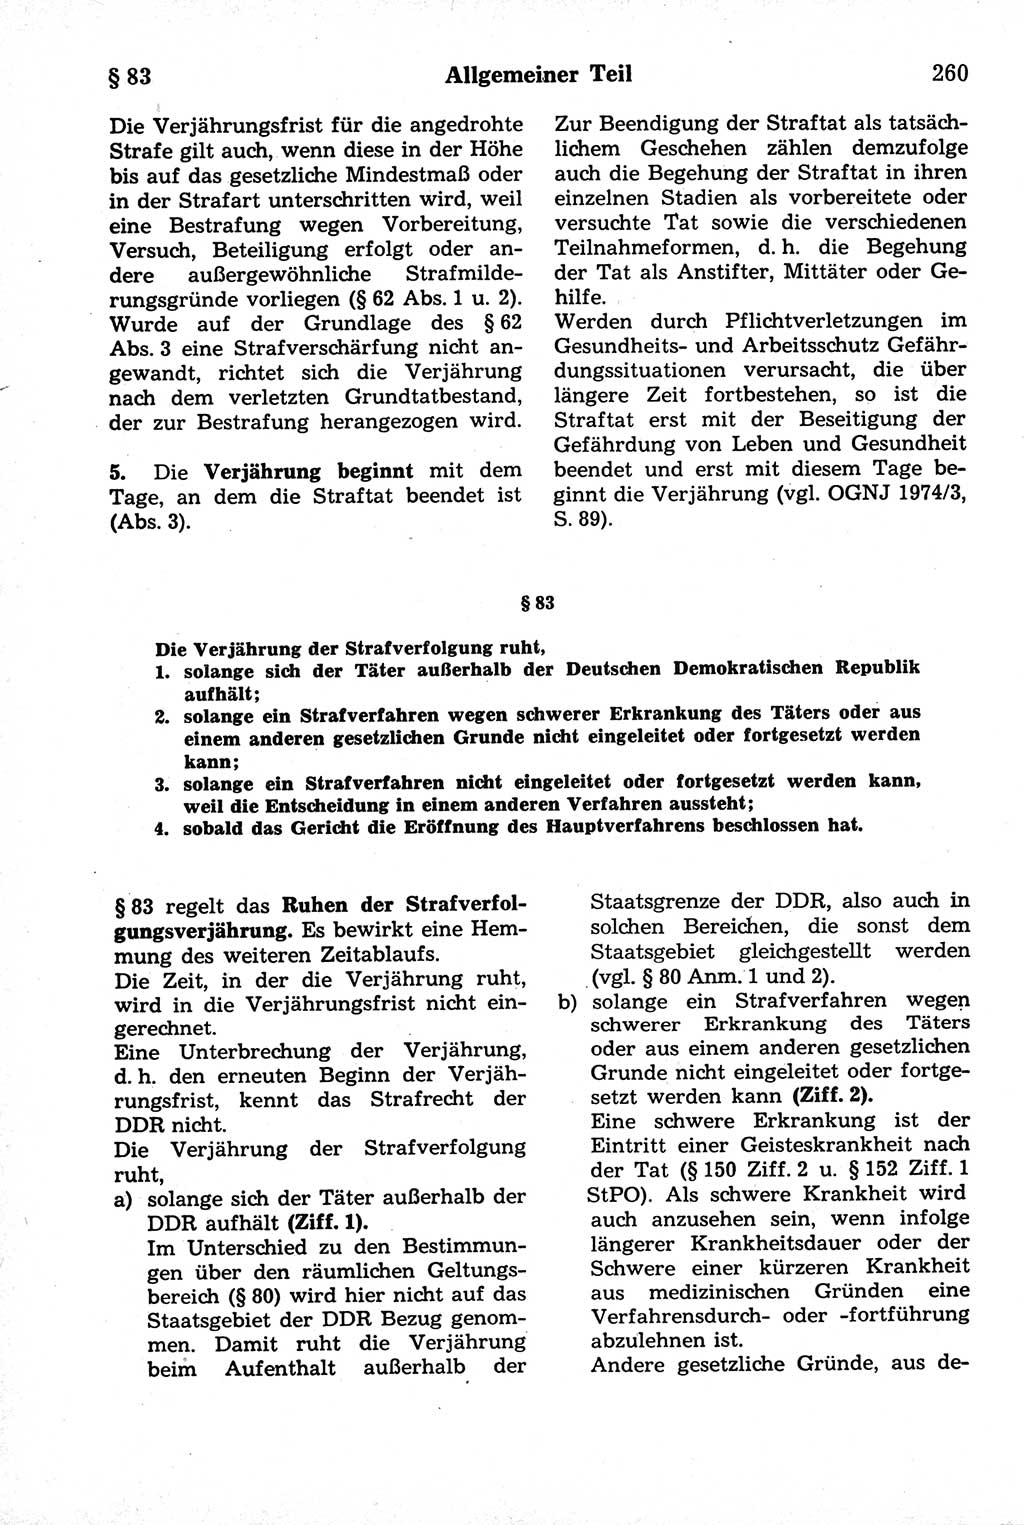 Strafrecht der Deutschen Demokratischen Republik (DDR), Kommentar zum Strafgesetzbuch (StGB) 1981, Seite 260 (Strafr. DDR Komm. StGB 1981, S. 260)